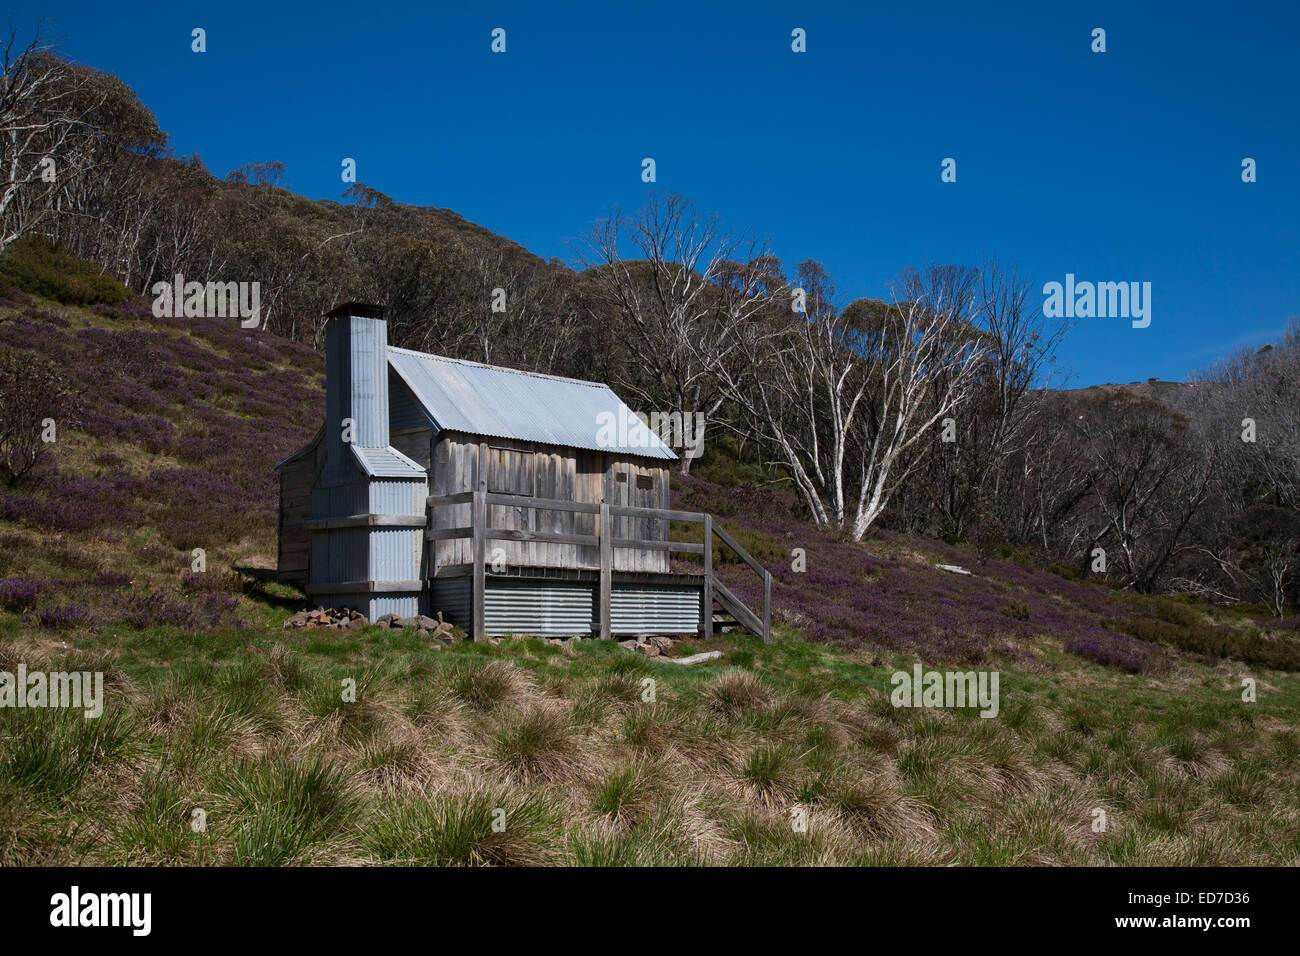 El Silver Brumby Hut, losa construida de madera, el monte Hotham en Victoria's país alpino Australia Foto de stock